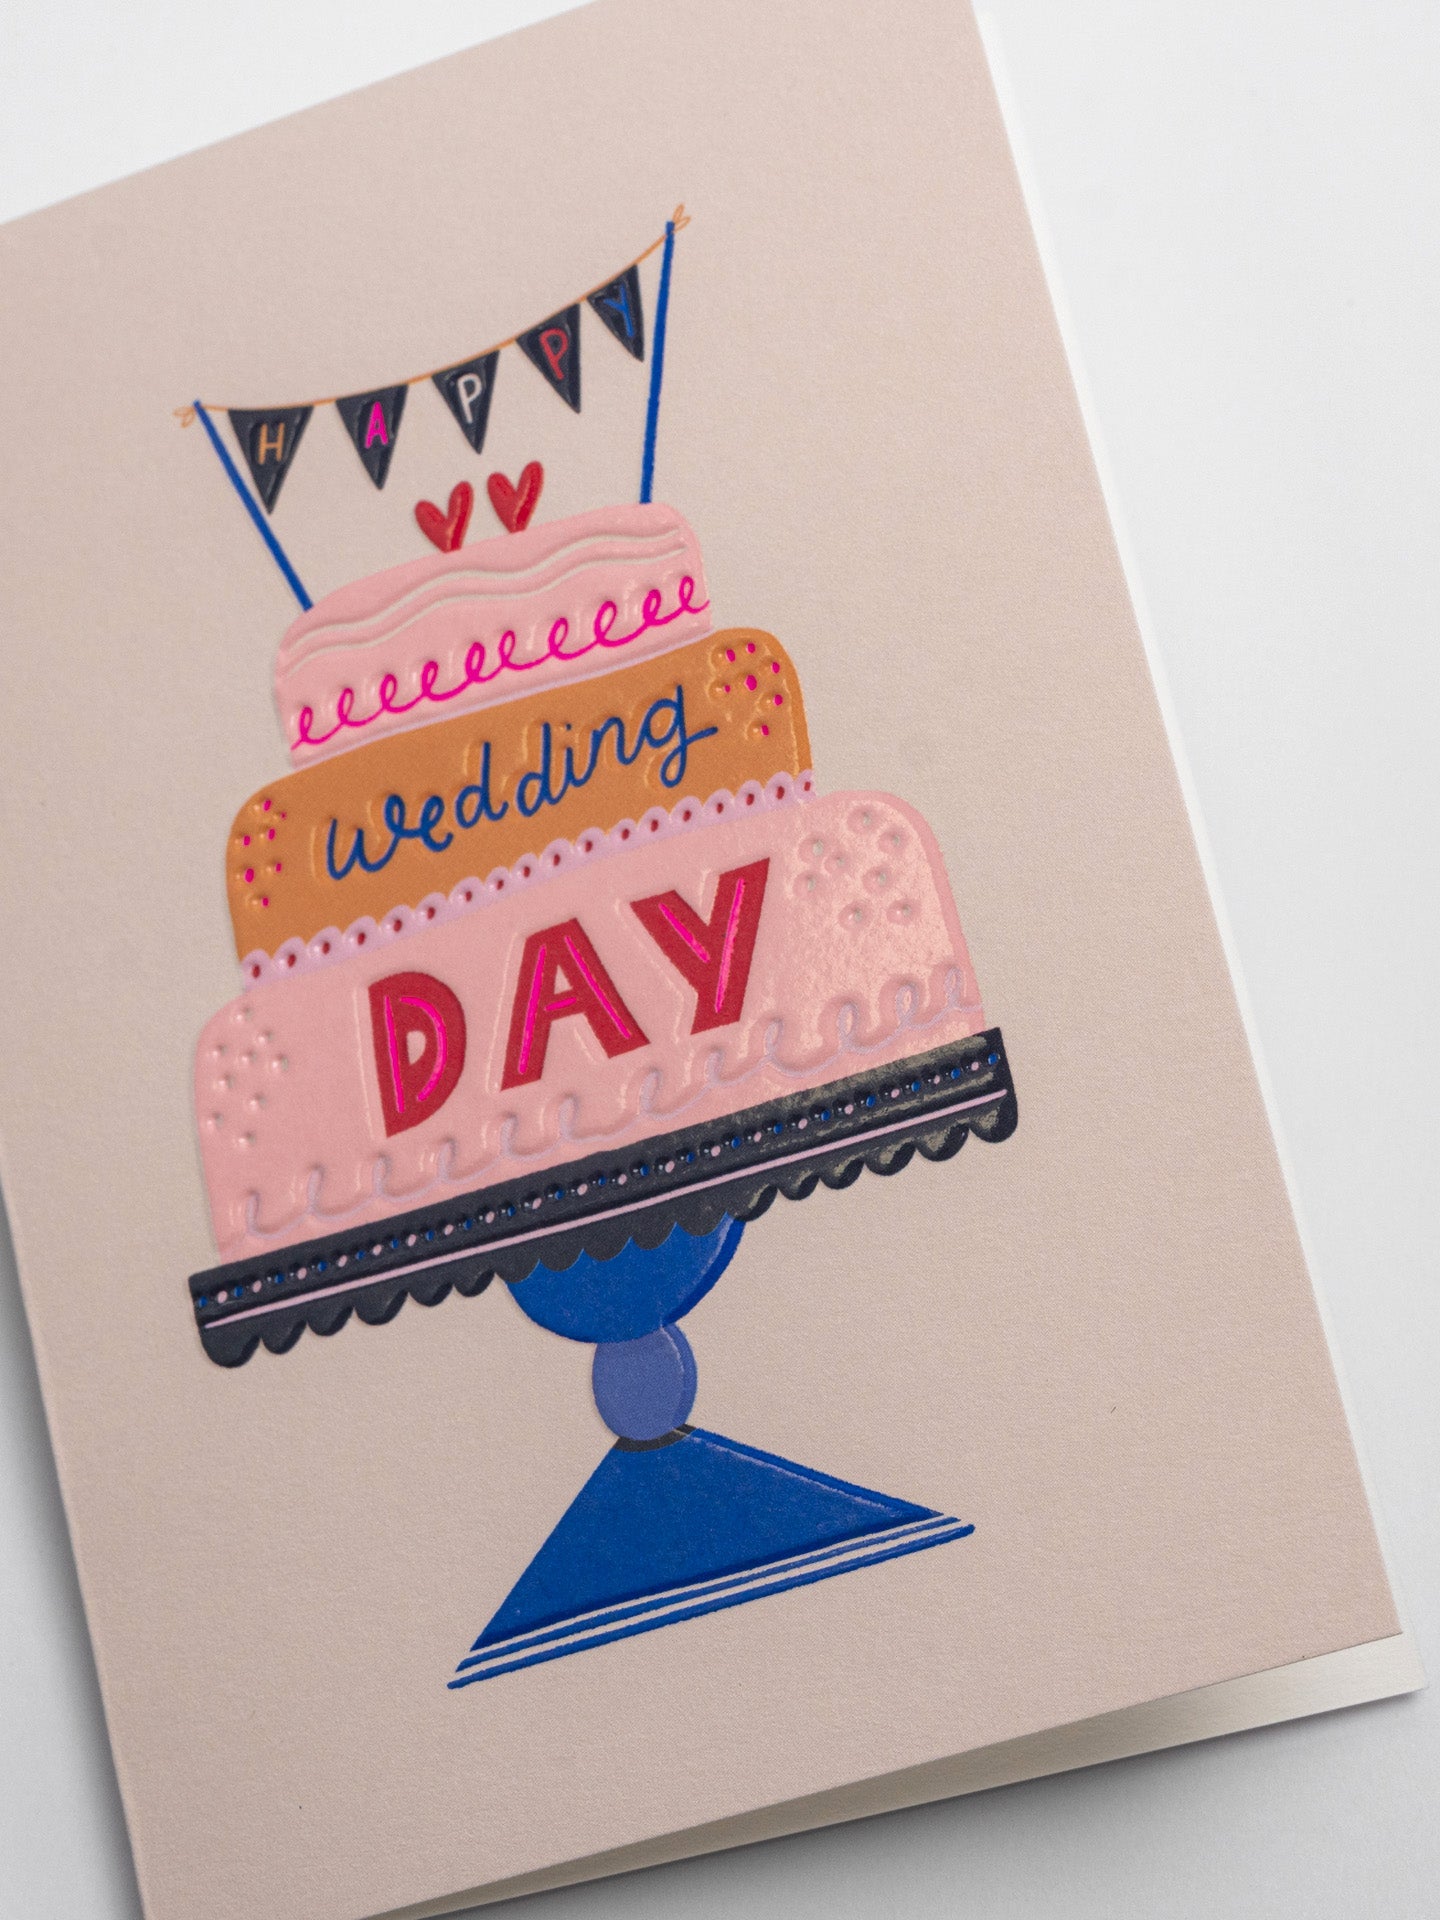 Happy Wedding Day Cake Wedding Card by Jessica Smith